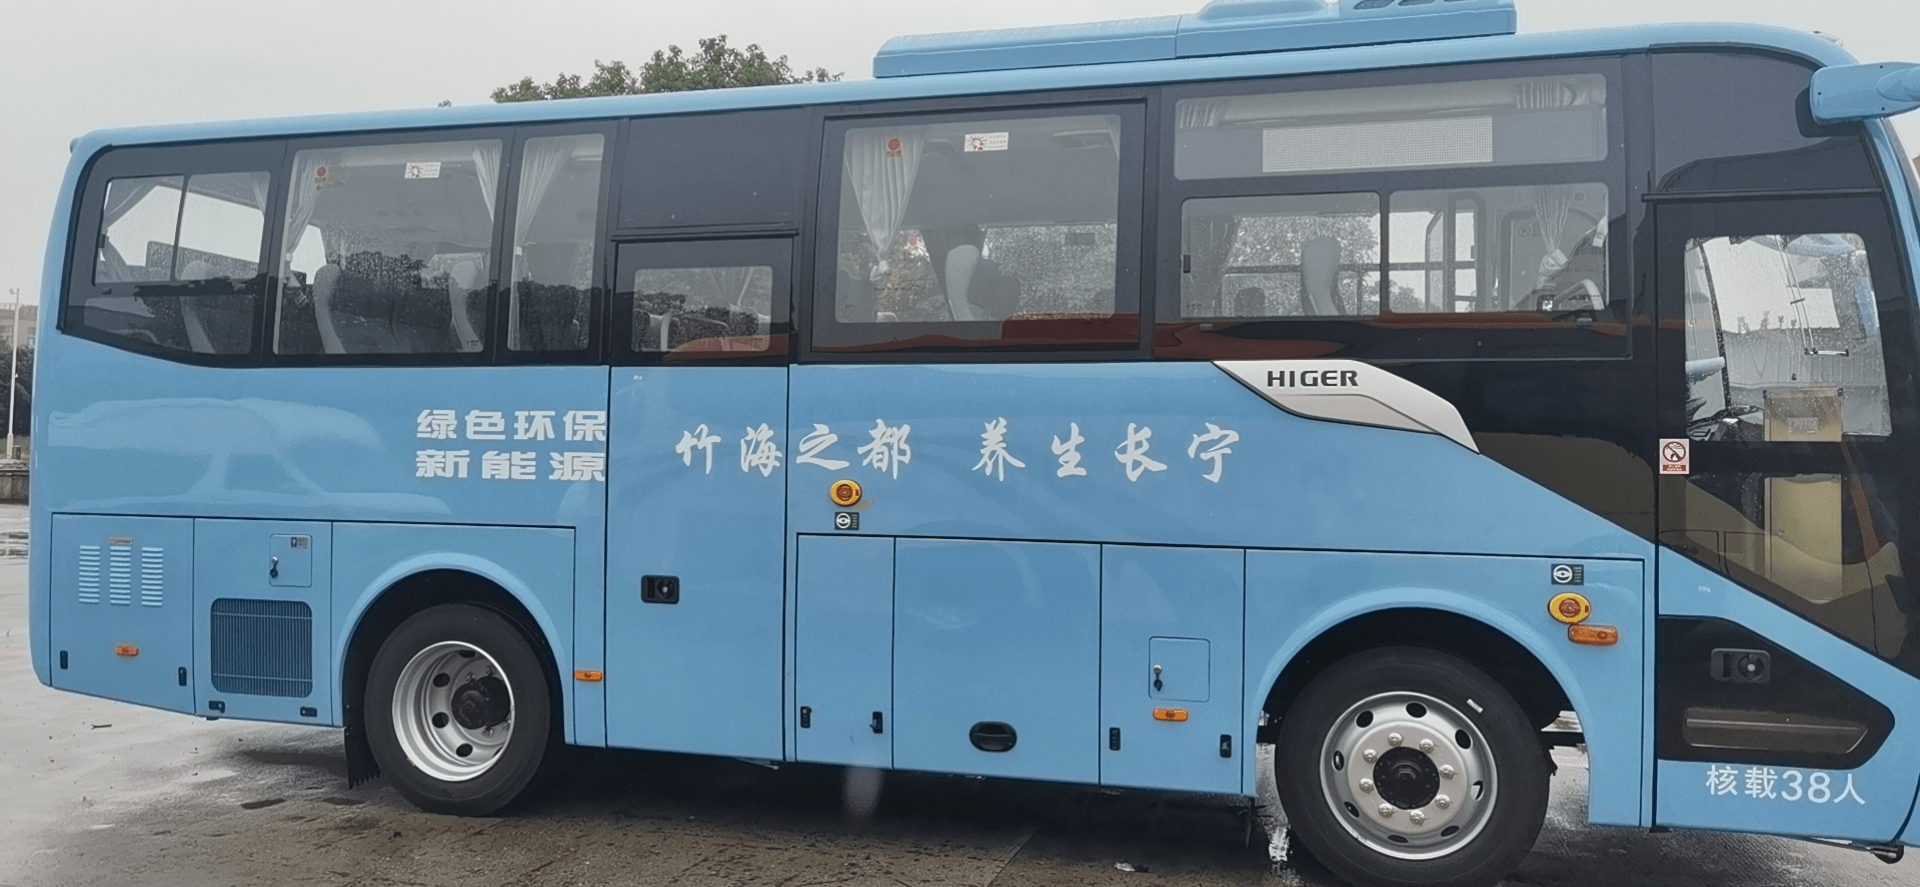 乡村振兴+全域旅运 苏州金龙提速长宁城乡公交一体化进程 